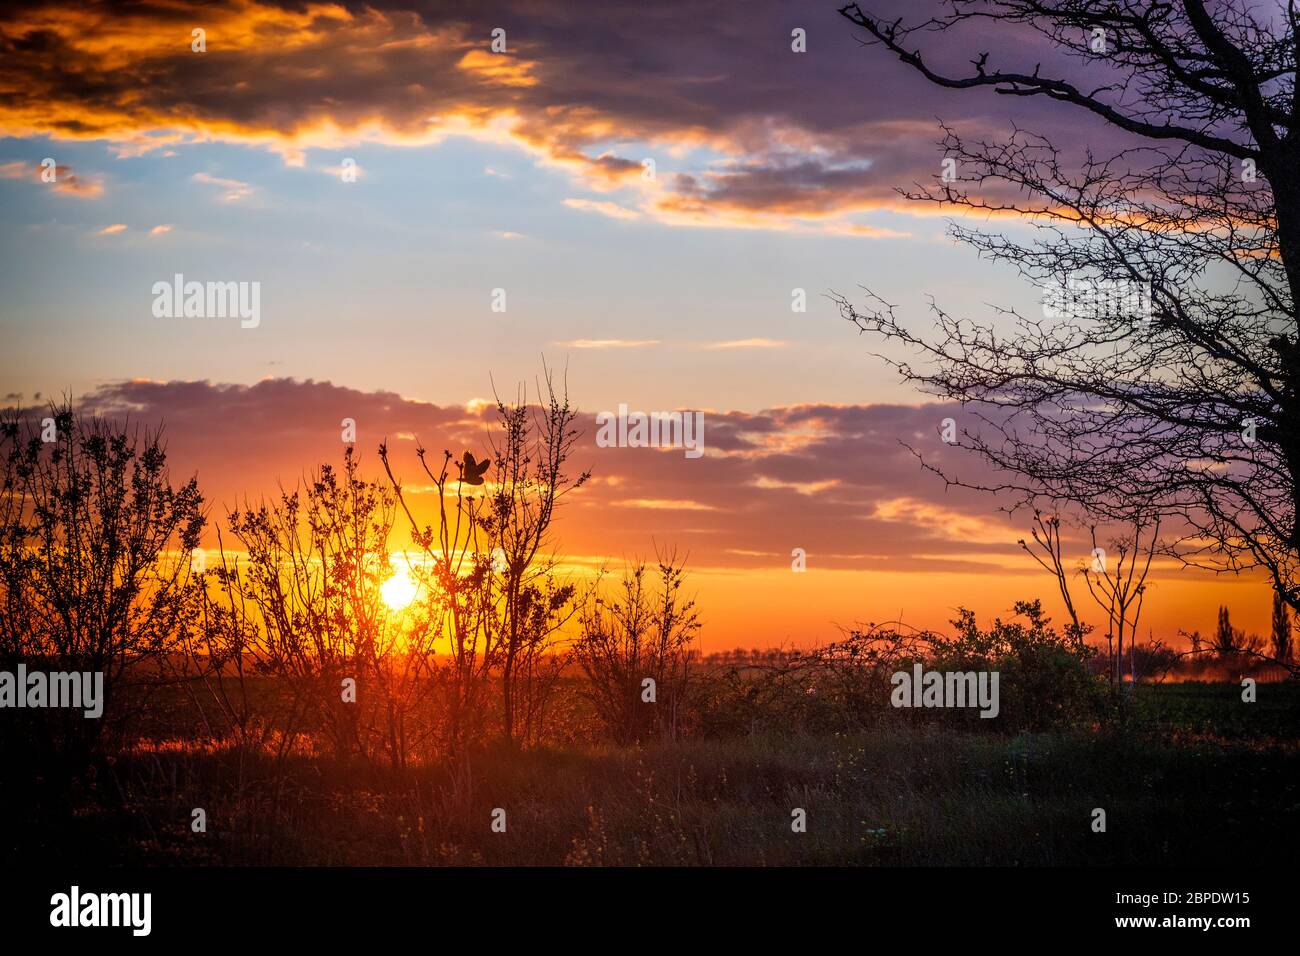 Magic sunset with flying owl. Wonderlust landscape Stock Photo